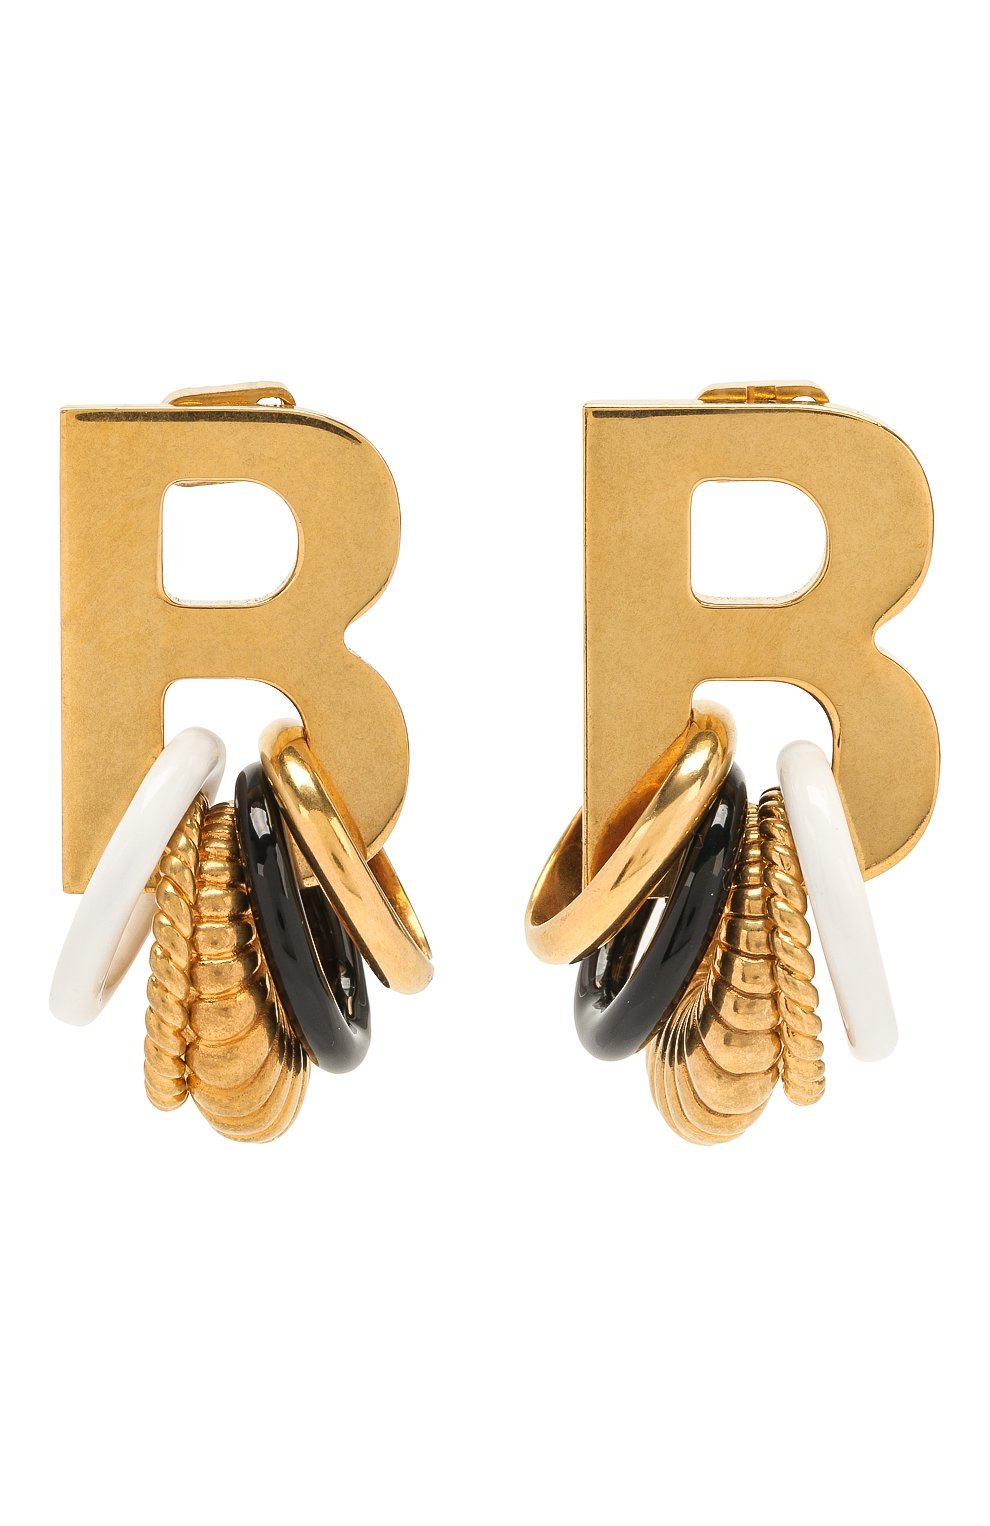 Цум серьги. Баленсиага серьги золотые. Серьги Баленсиага ЦУМ. Серьги Balenciaga ЦУМ. Balenciaga Golden Multirings XL Earrings серьги.